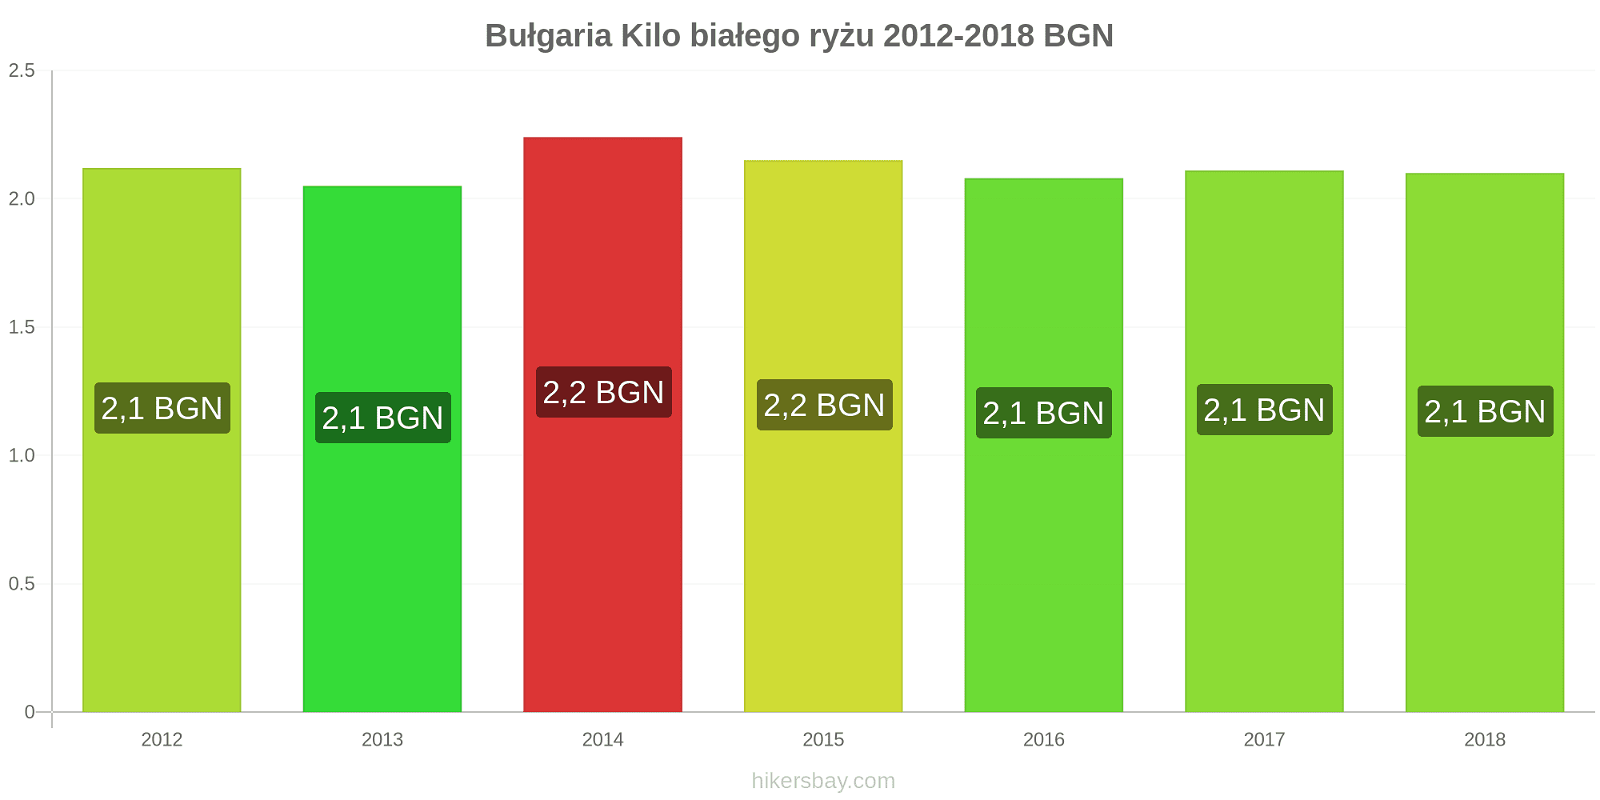 Bułgaria zmiany cen Kilo białego ryżu hikersbay.com